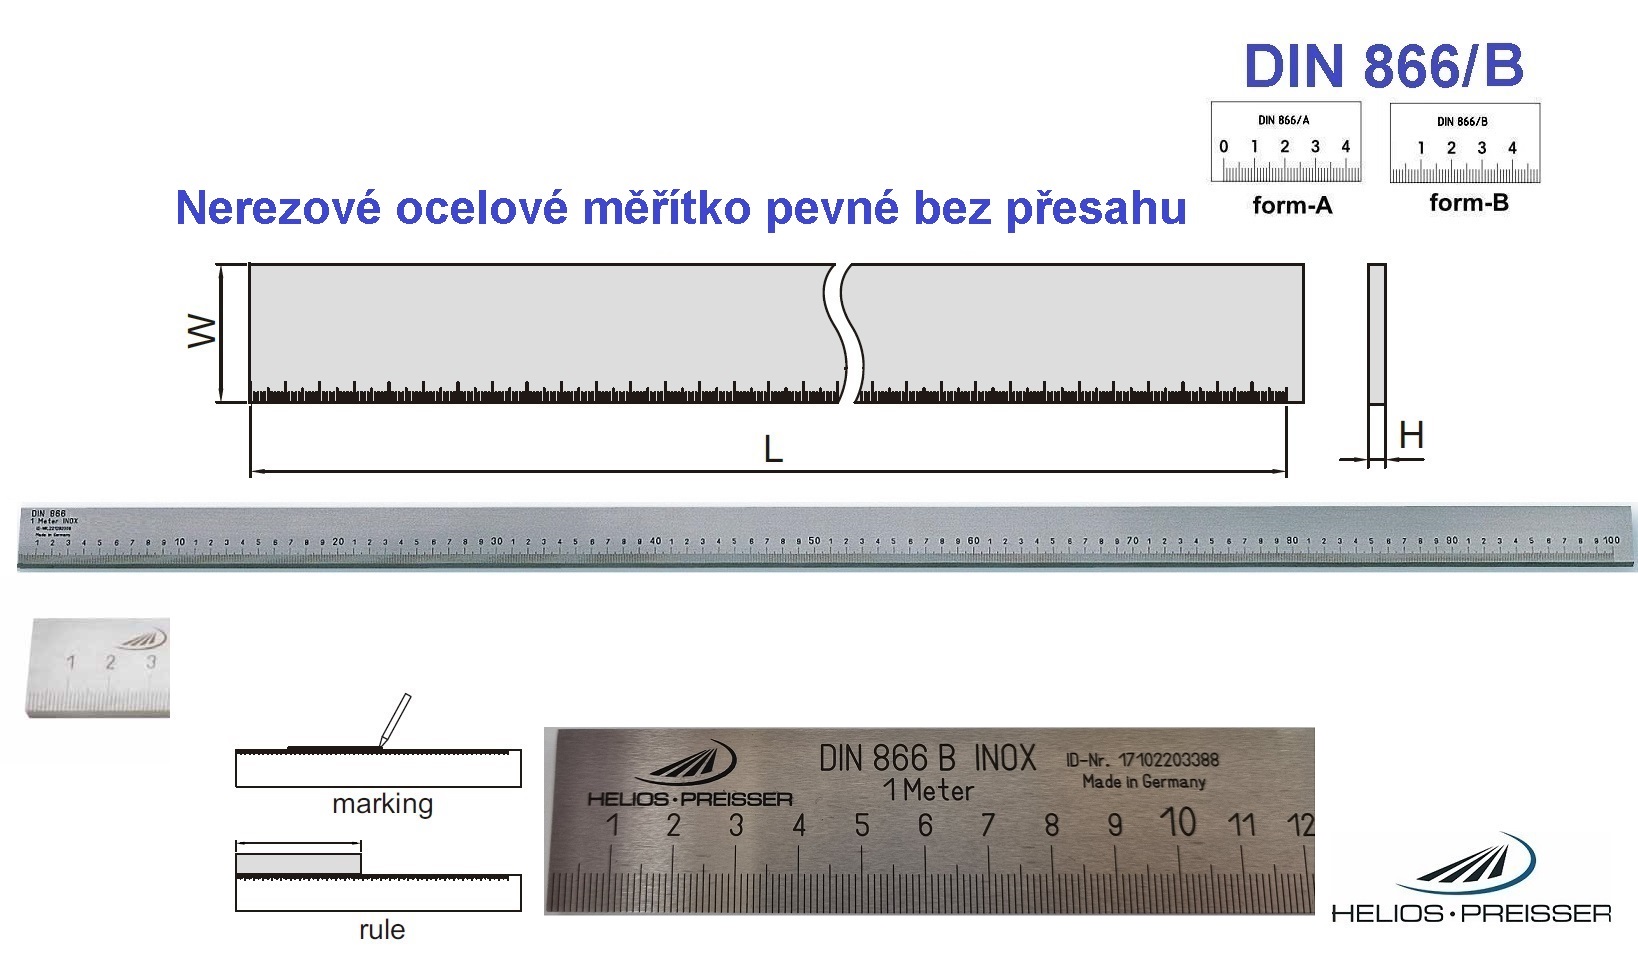 Nerezové ocelové měřítko pevné bez přesahu 2000 /40x8 mm, DIN 866/B, Helios-Preisser